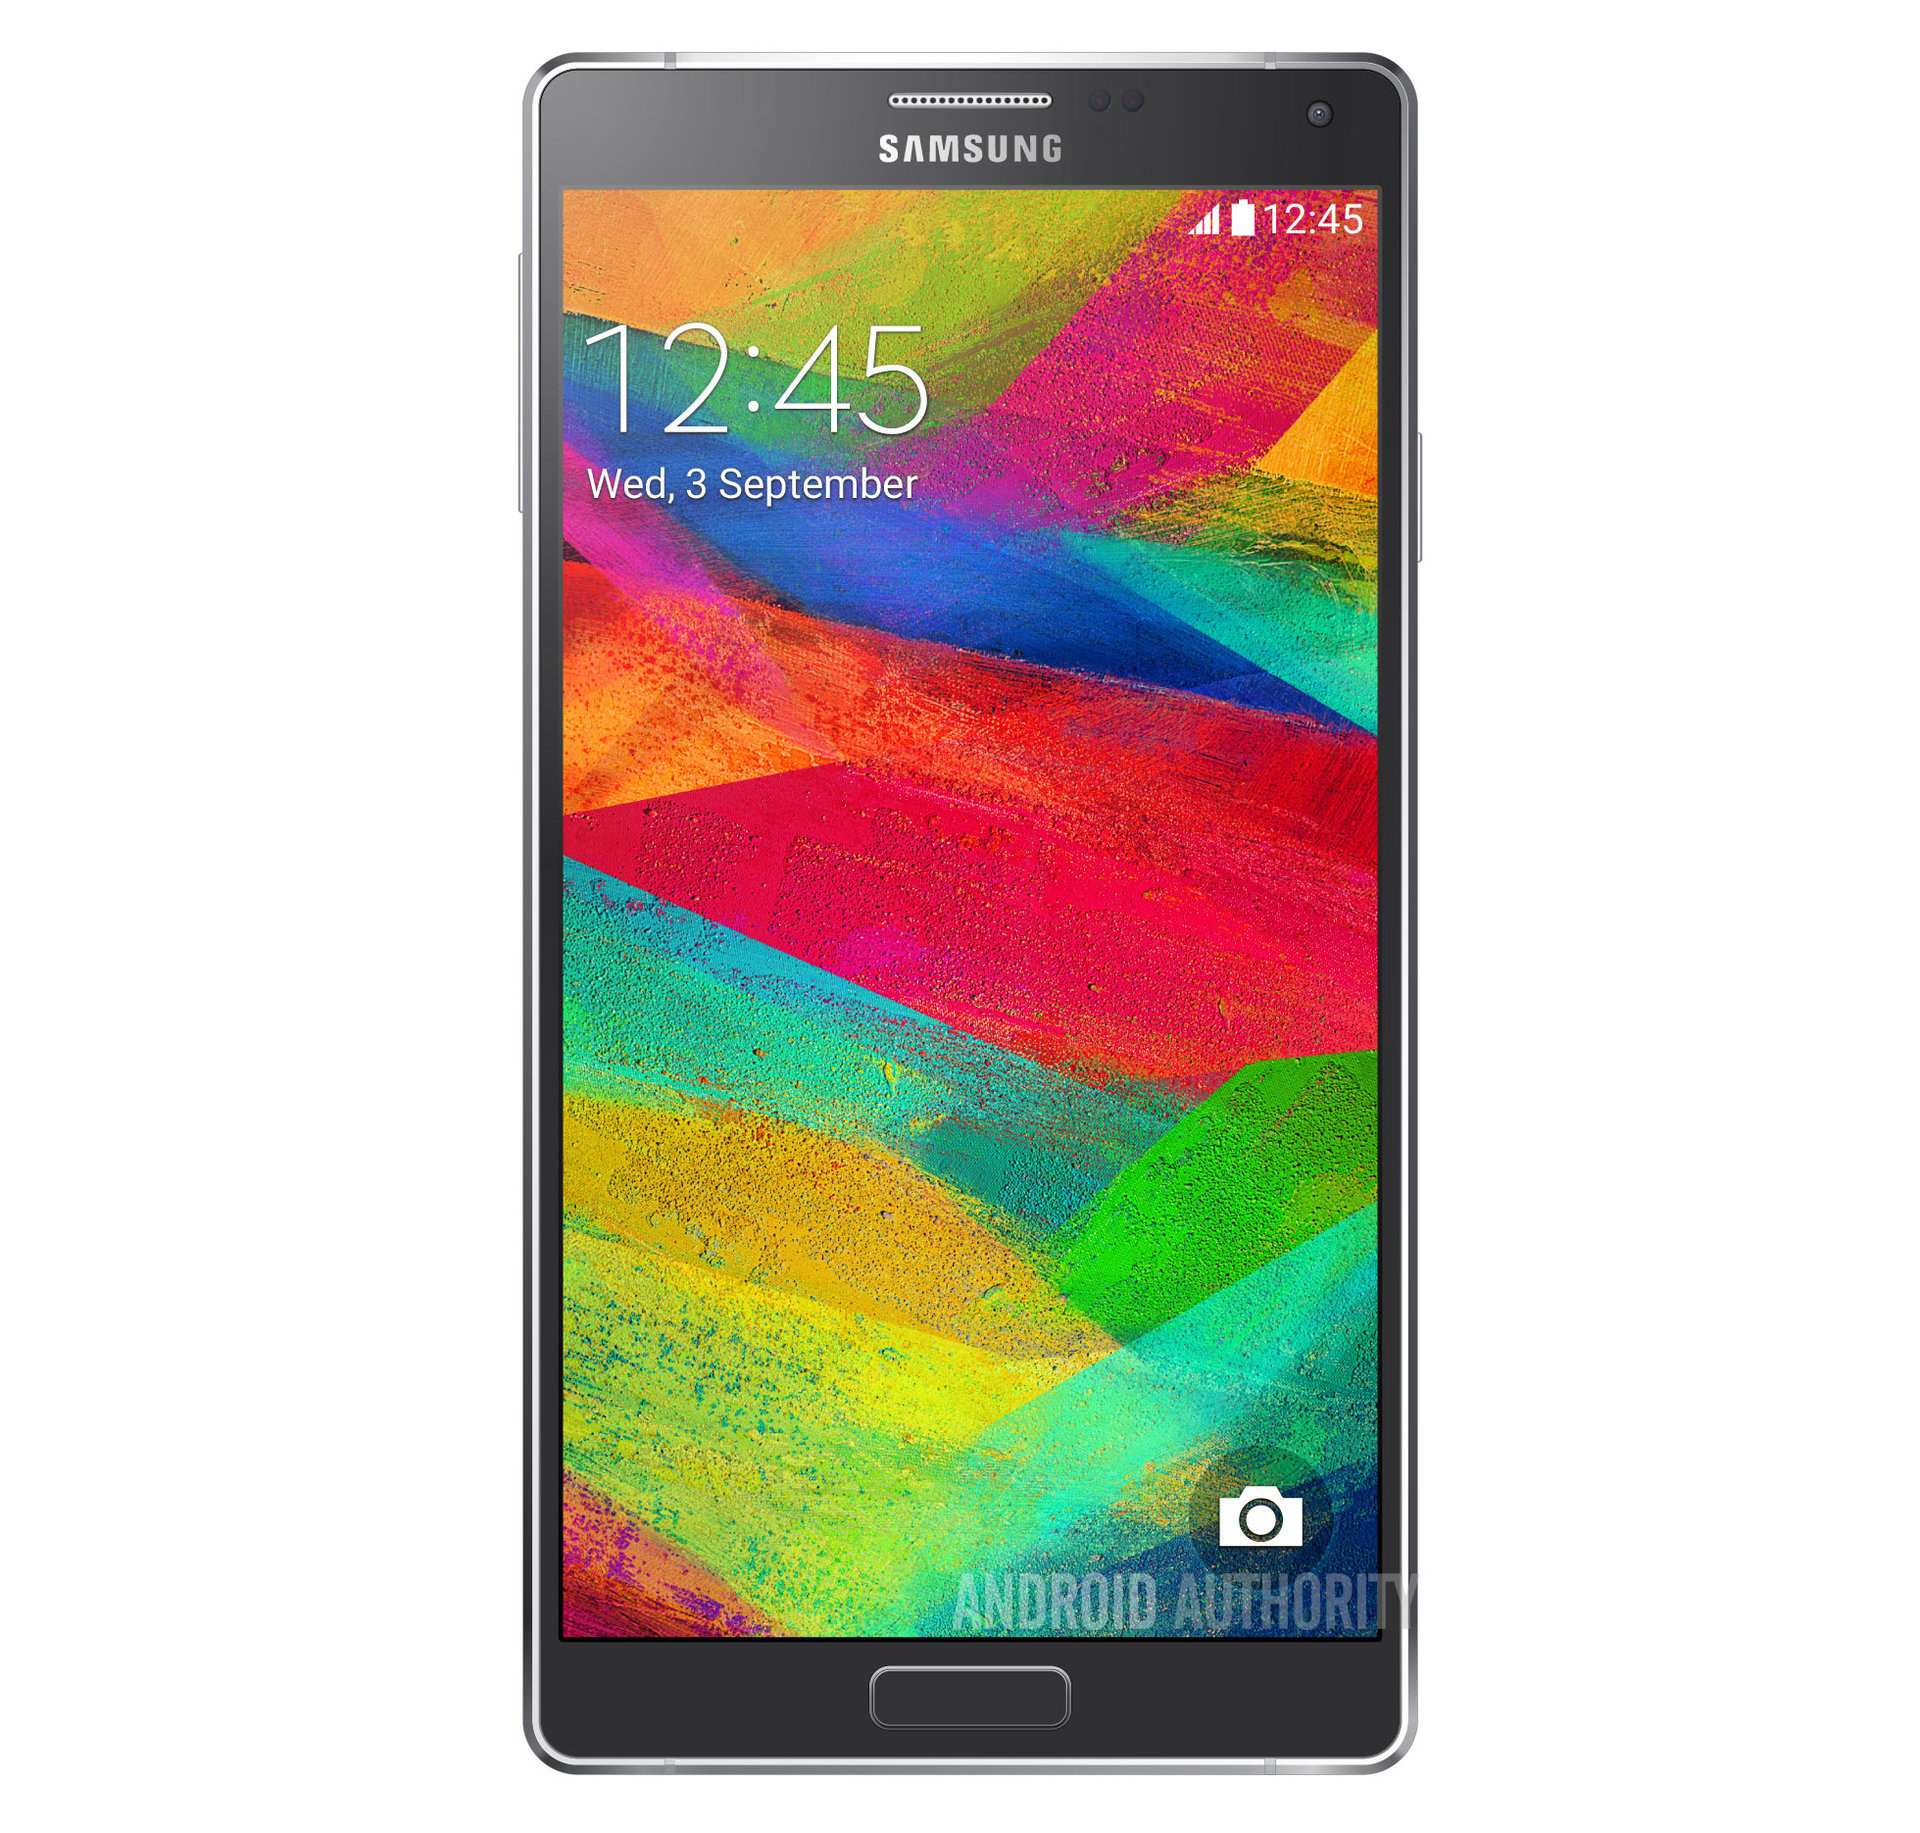 Samsung Galaxy Note 4 exclusive